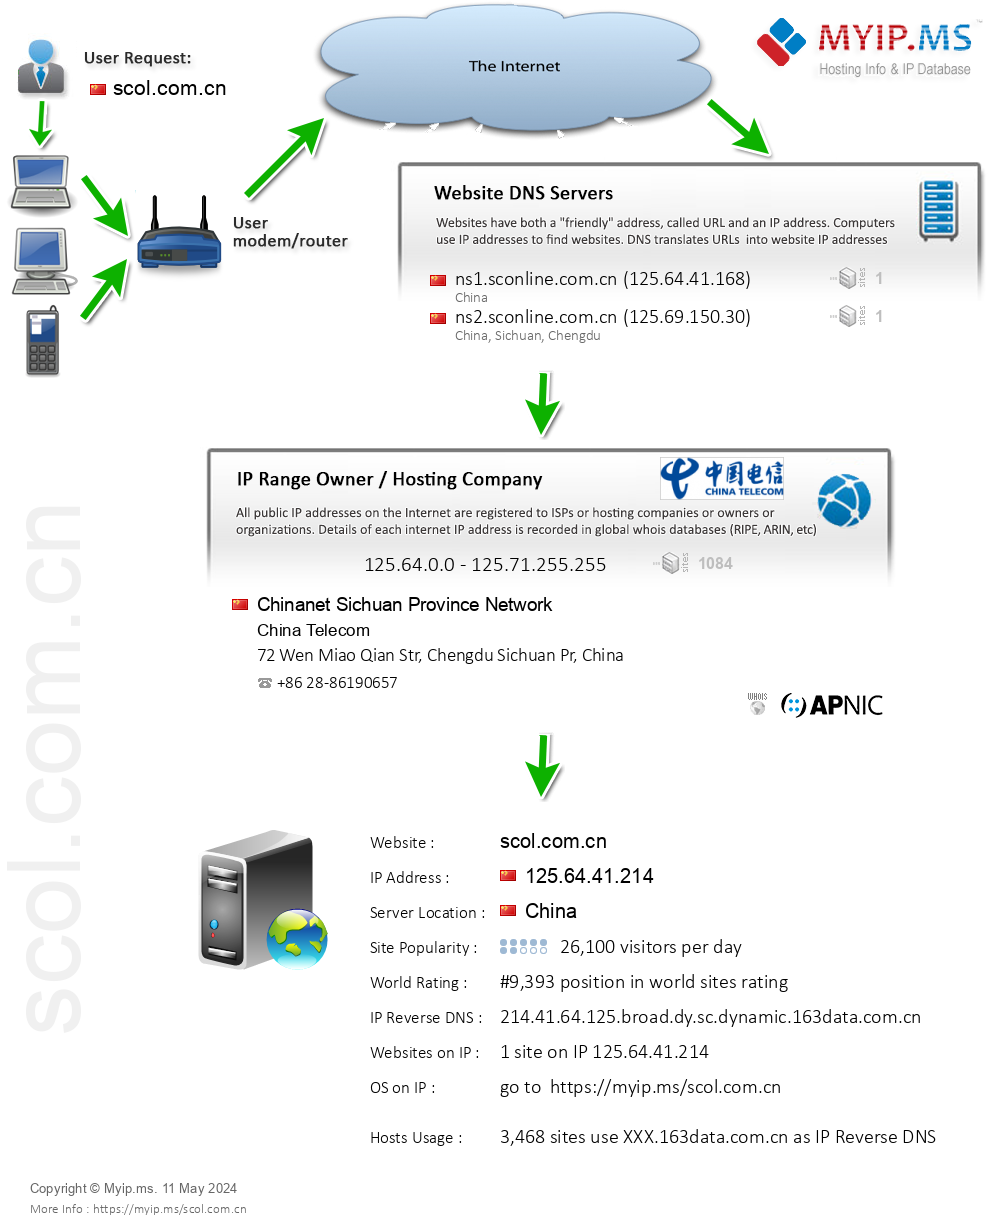 Scol.com.cn - Website Hosting Visual IP Diagram